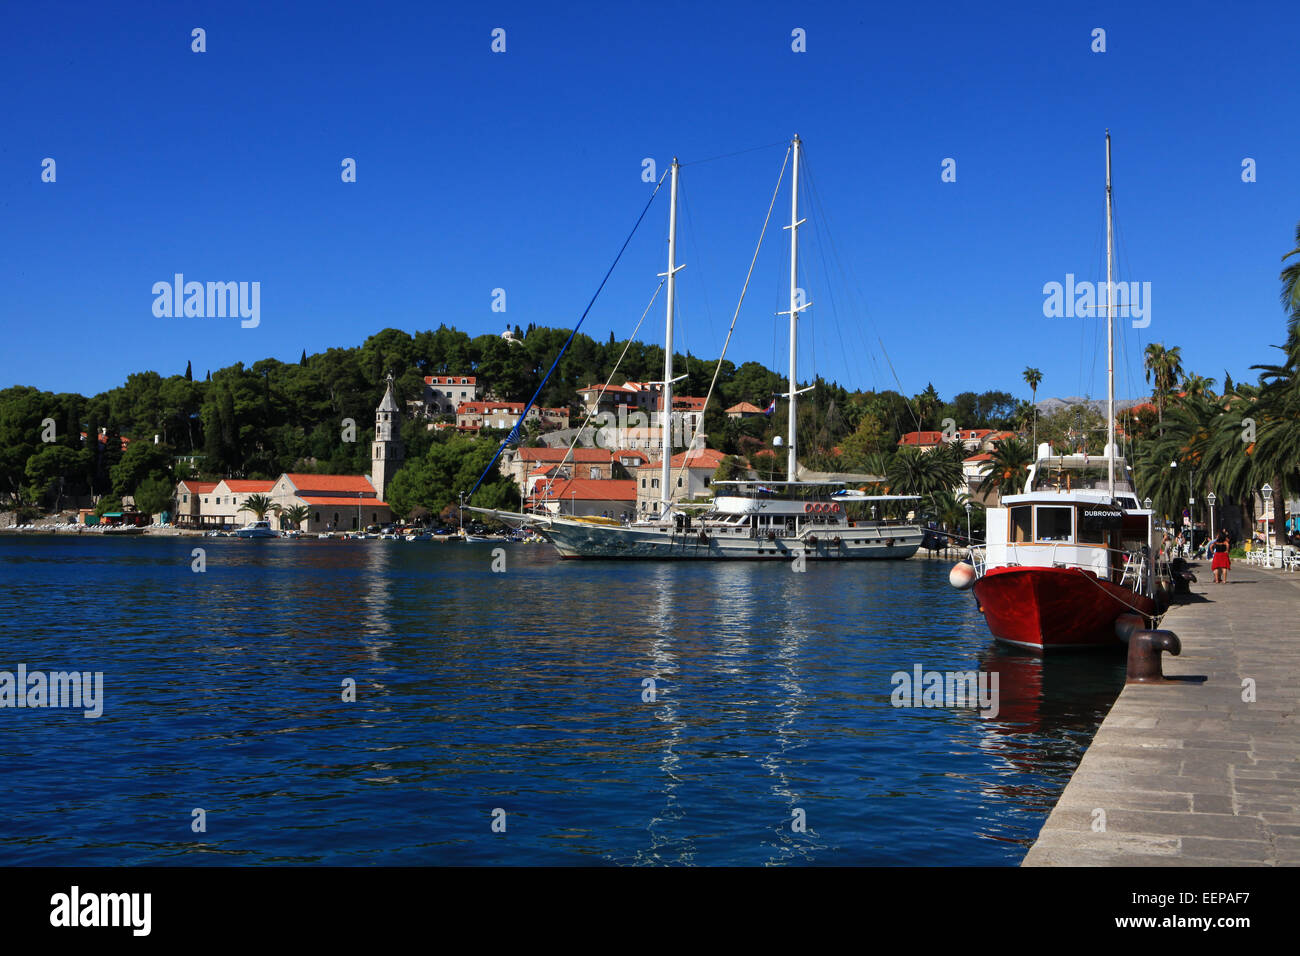 Cavtat Harbour, Croazia, Barche barche nel porto di mare Adreatic; Europa Centrale e sud-est Europa e Mediterraneo. Foto Stock